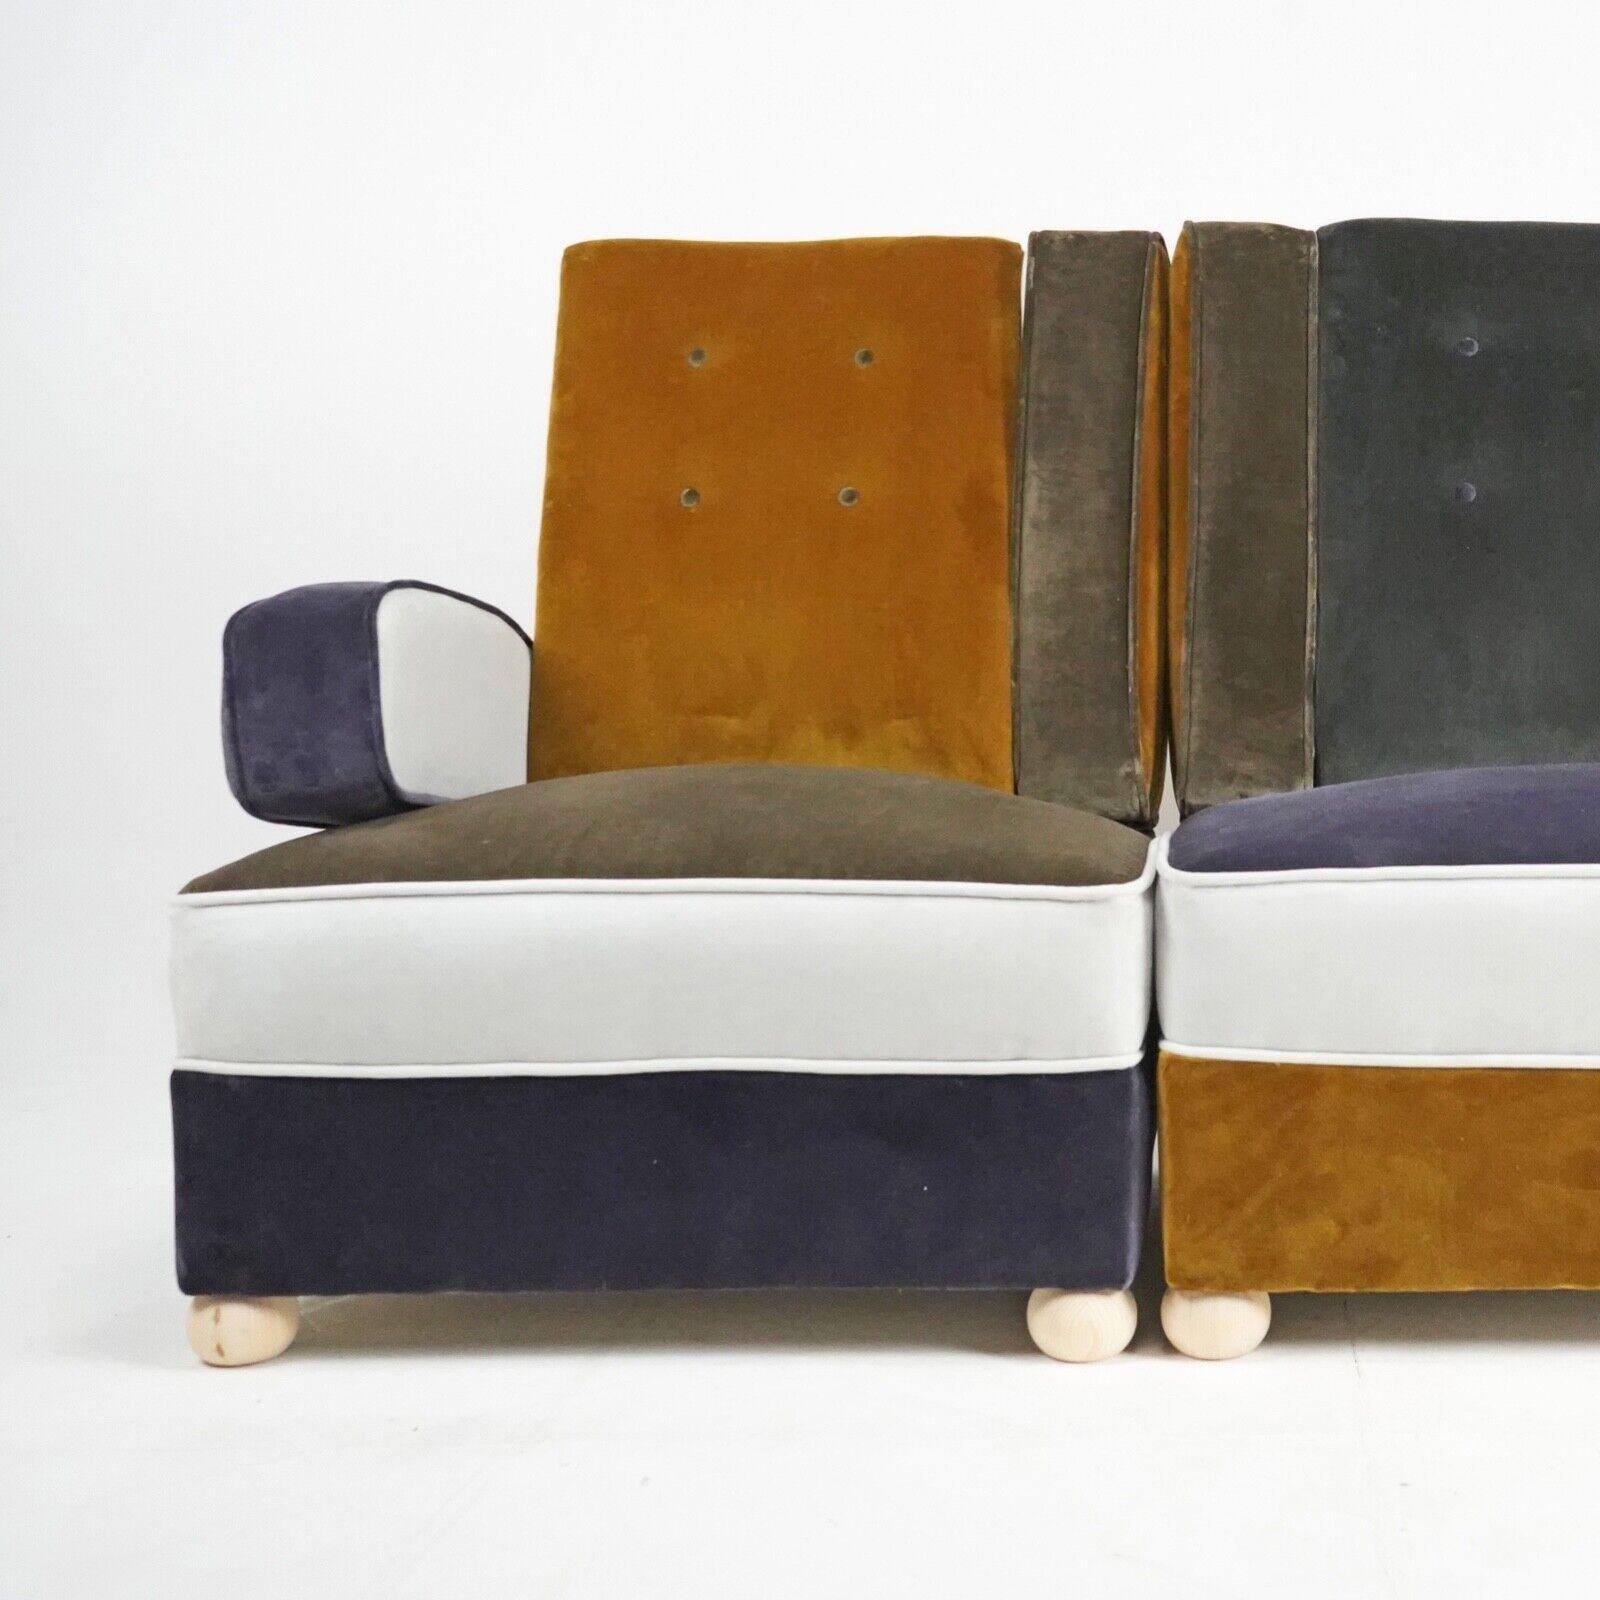 Ces fauteuils modulaires audacieux de style Art déco font sensation. Dotée d'un revêtement en velours patchwork unique, cette paire de fauteuils apportera une véritable touche de couleur à votre espace. Ils sont extrêmement confortables et faciles à